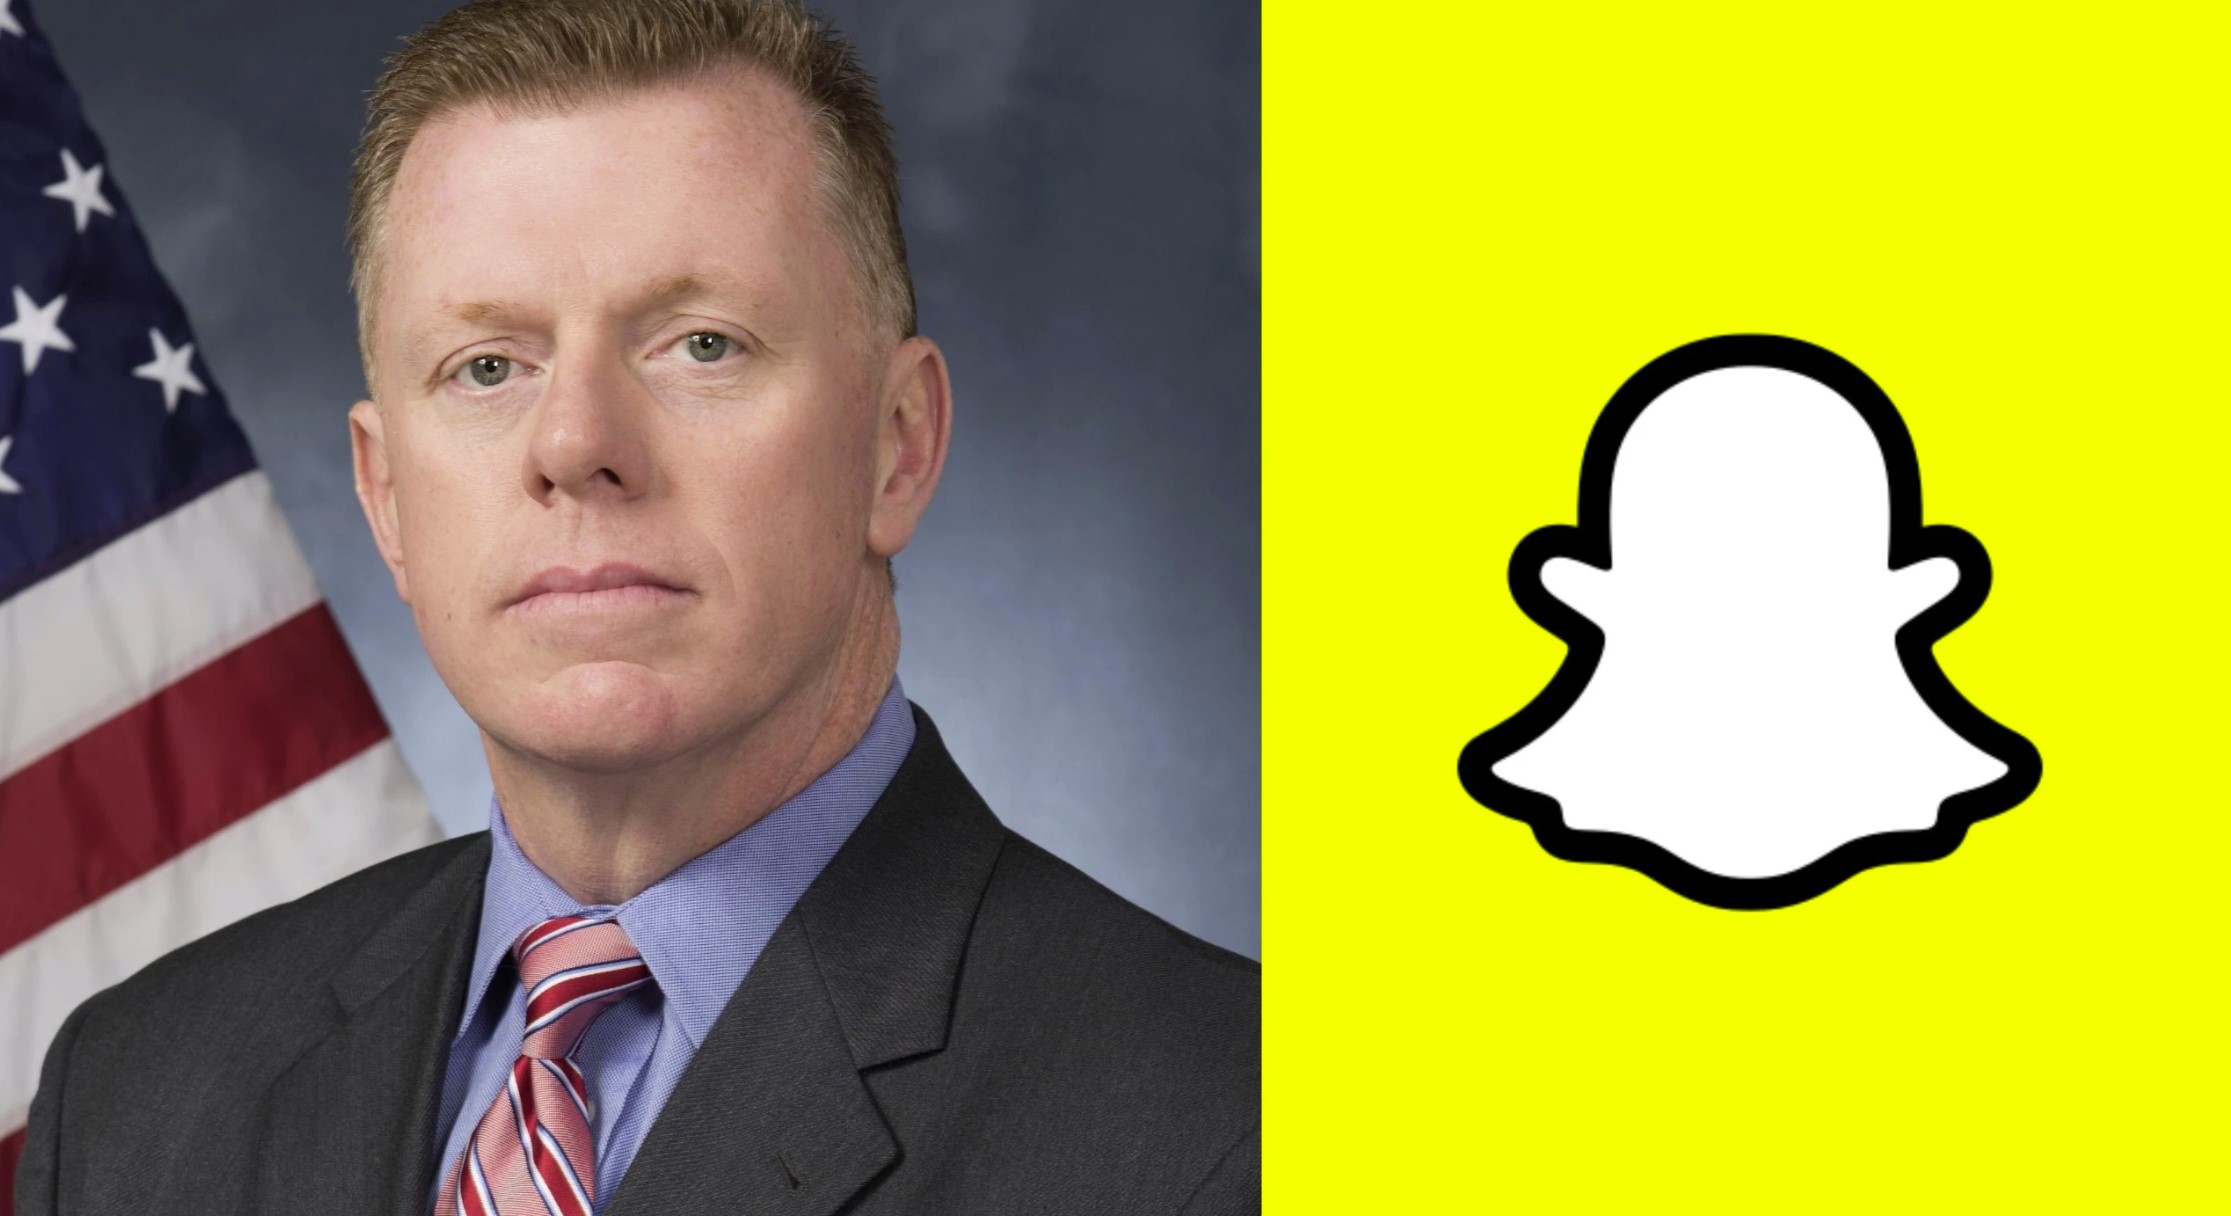 Le chef des services secrets est engagé par Snapchat pour diriger la sécurité des employés